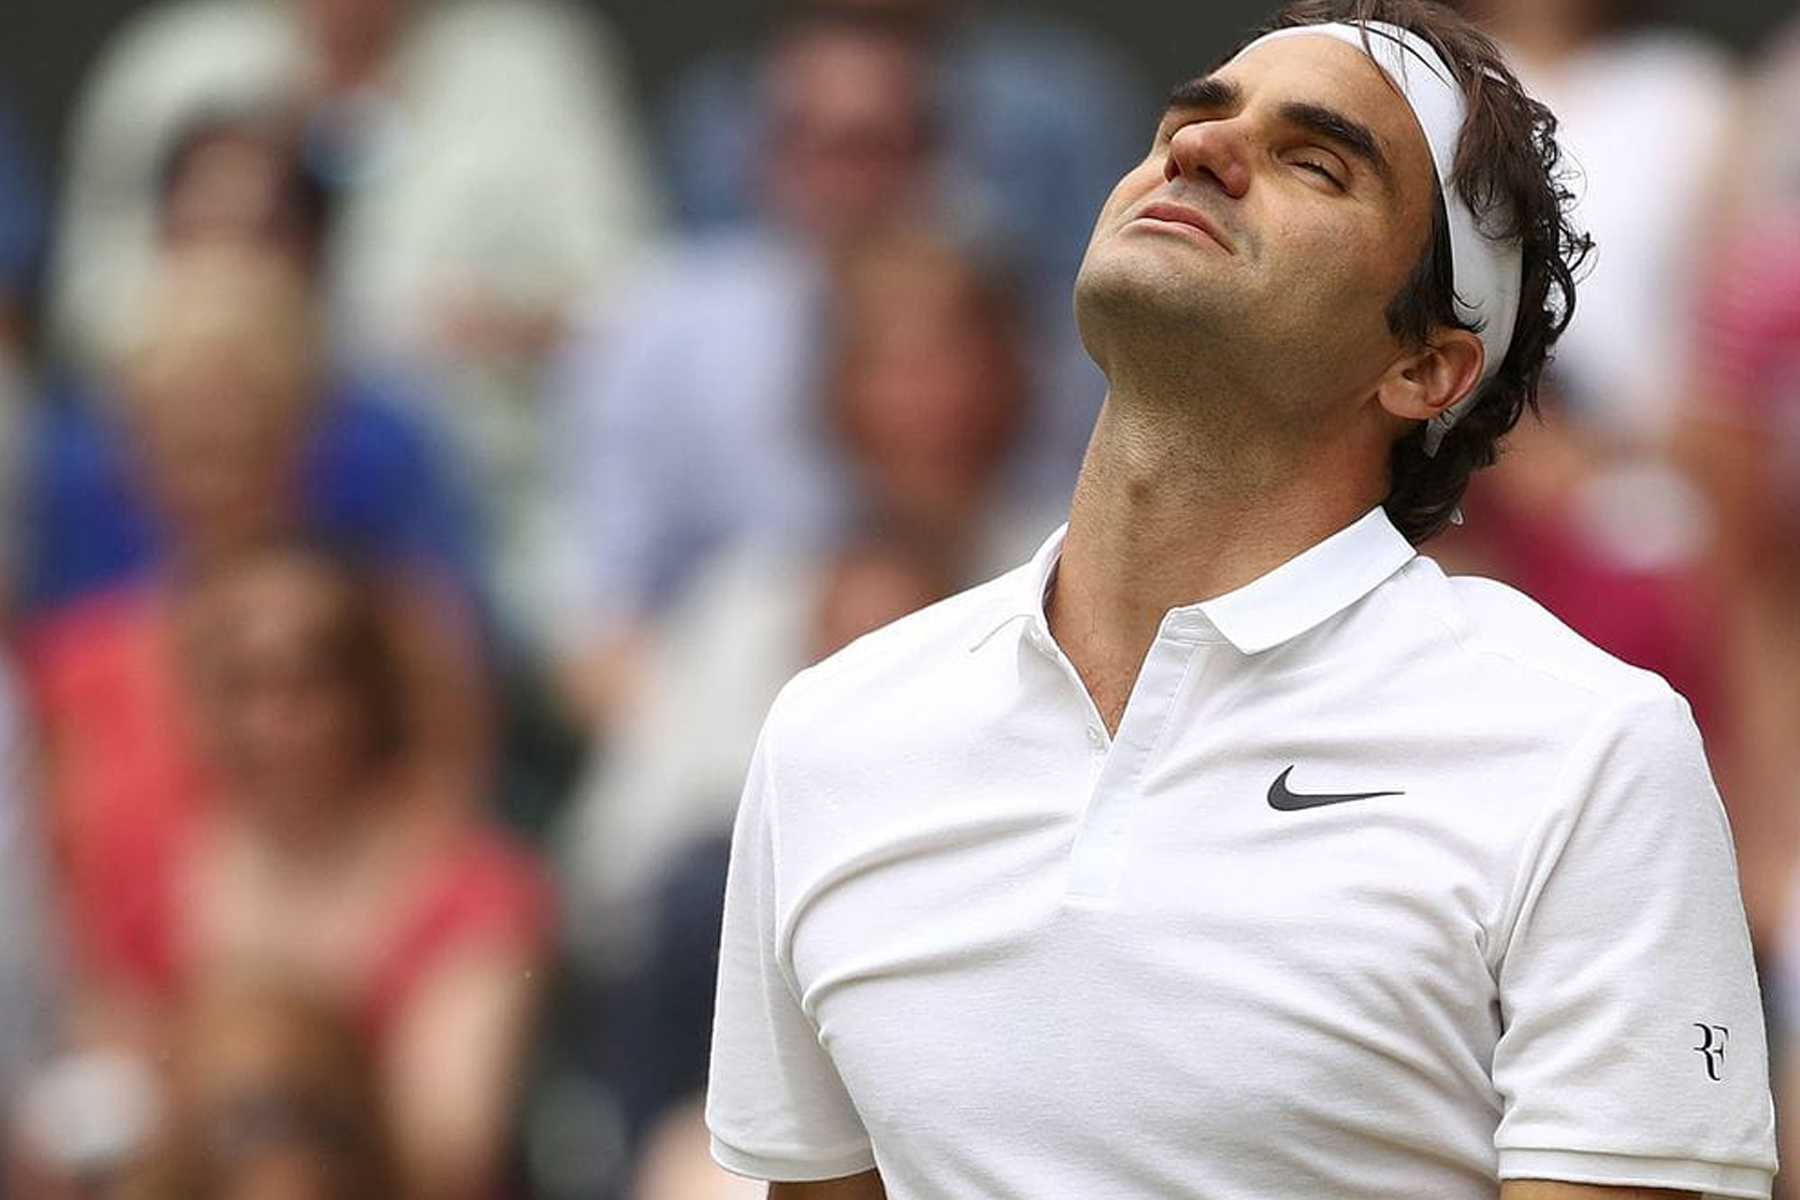  Roger Federer renuncia a Cincinnati  tras lesión